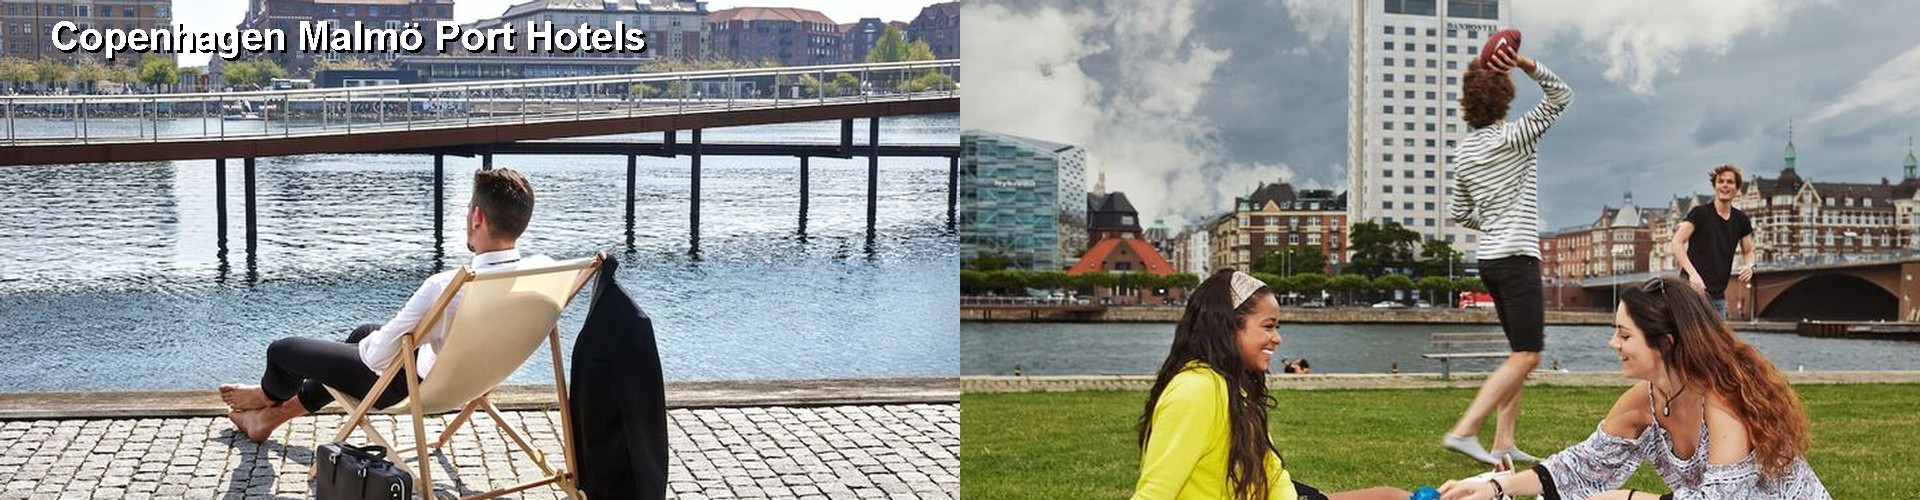 5 Best Hotels near Copenhagen Malmö Port